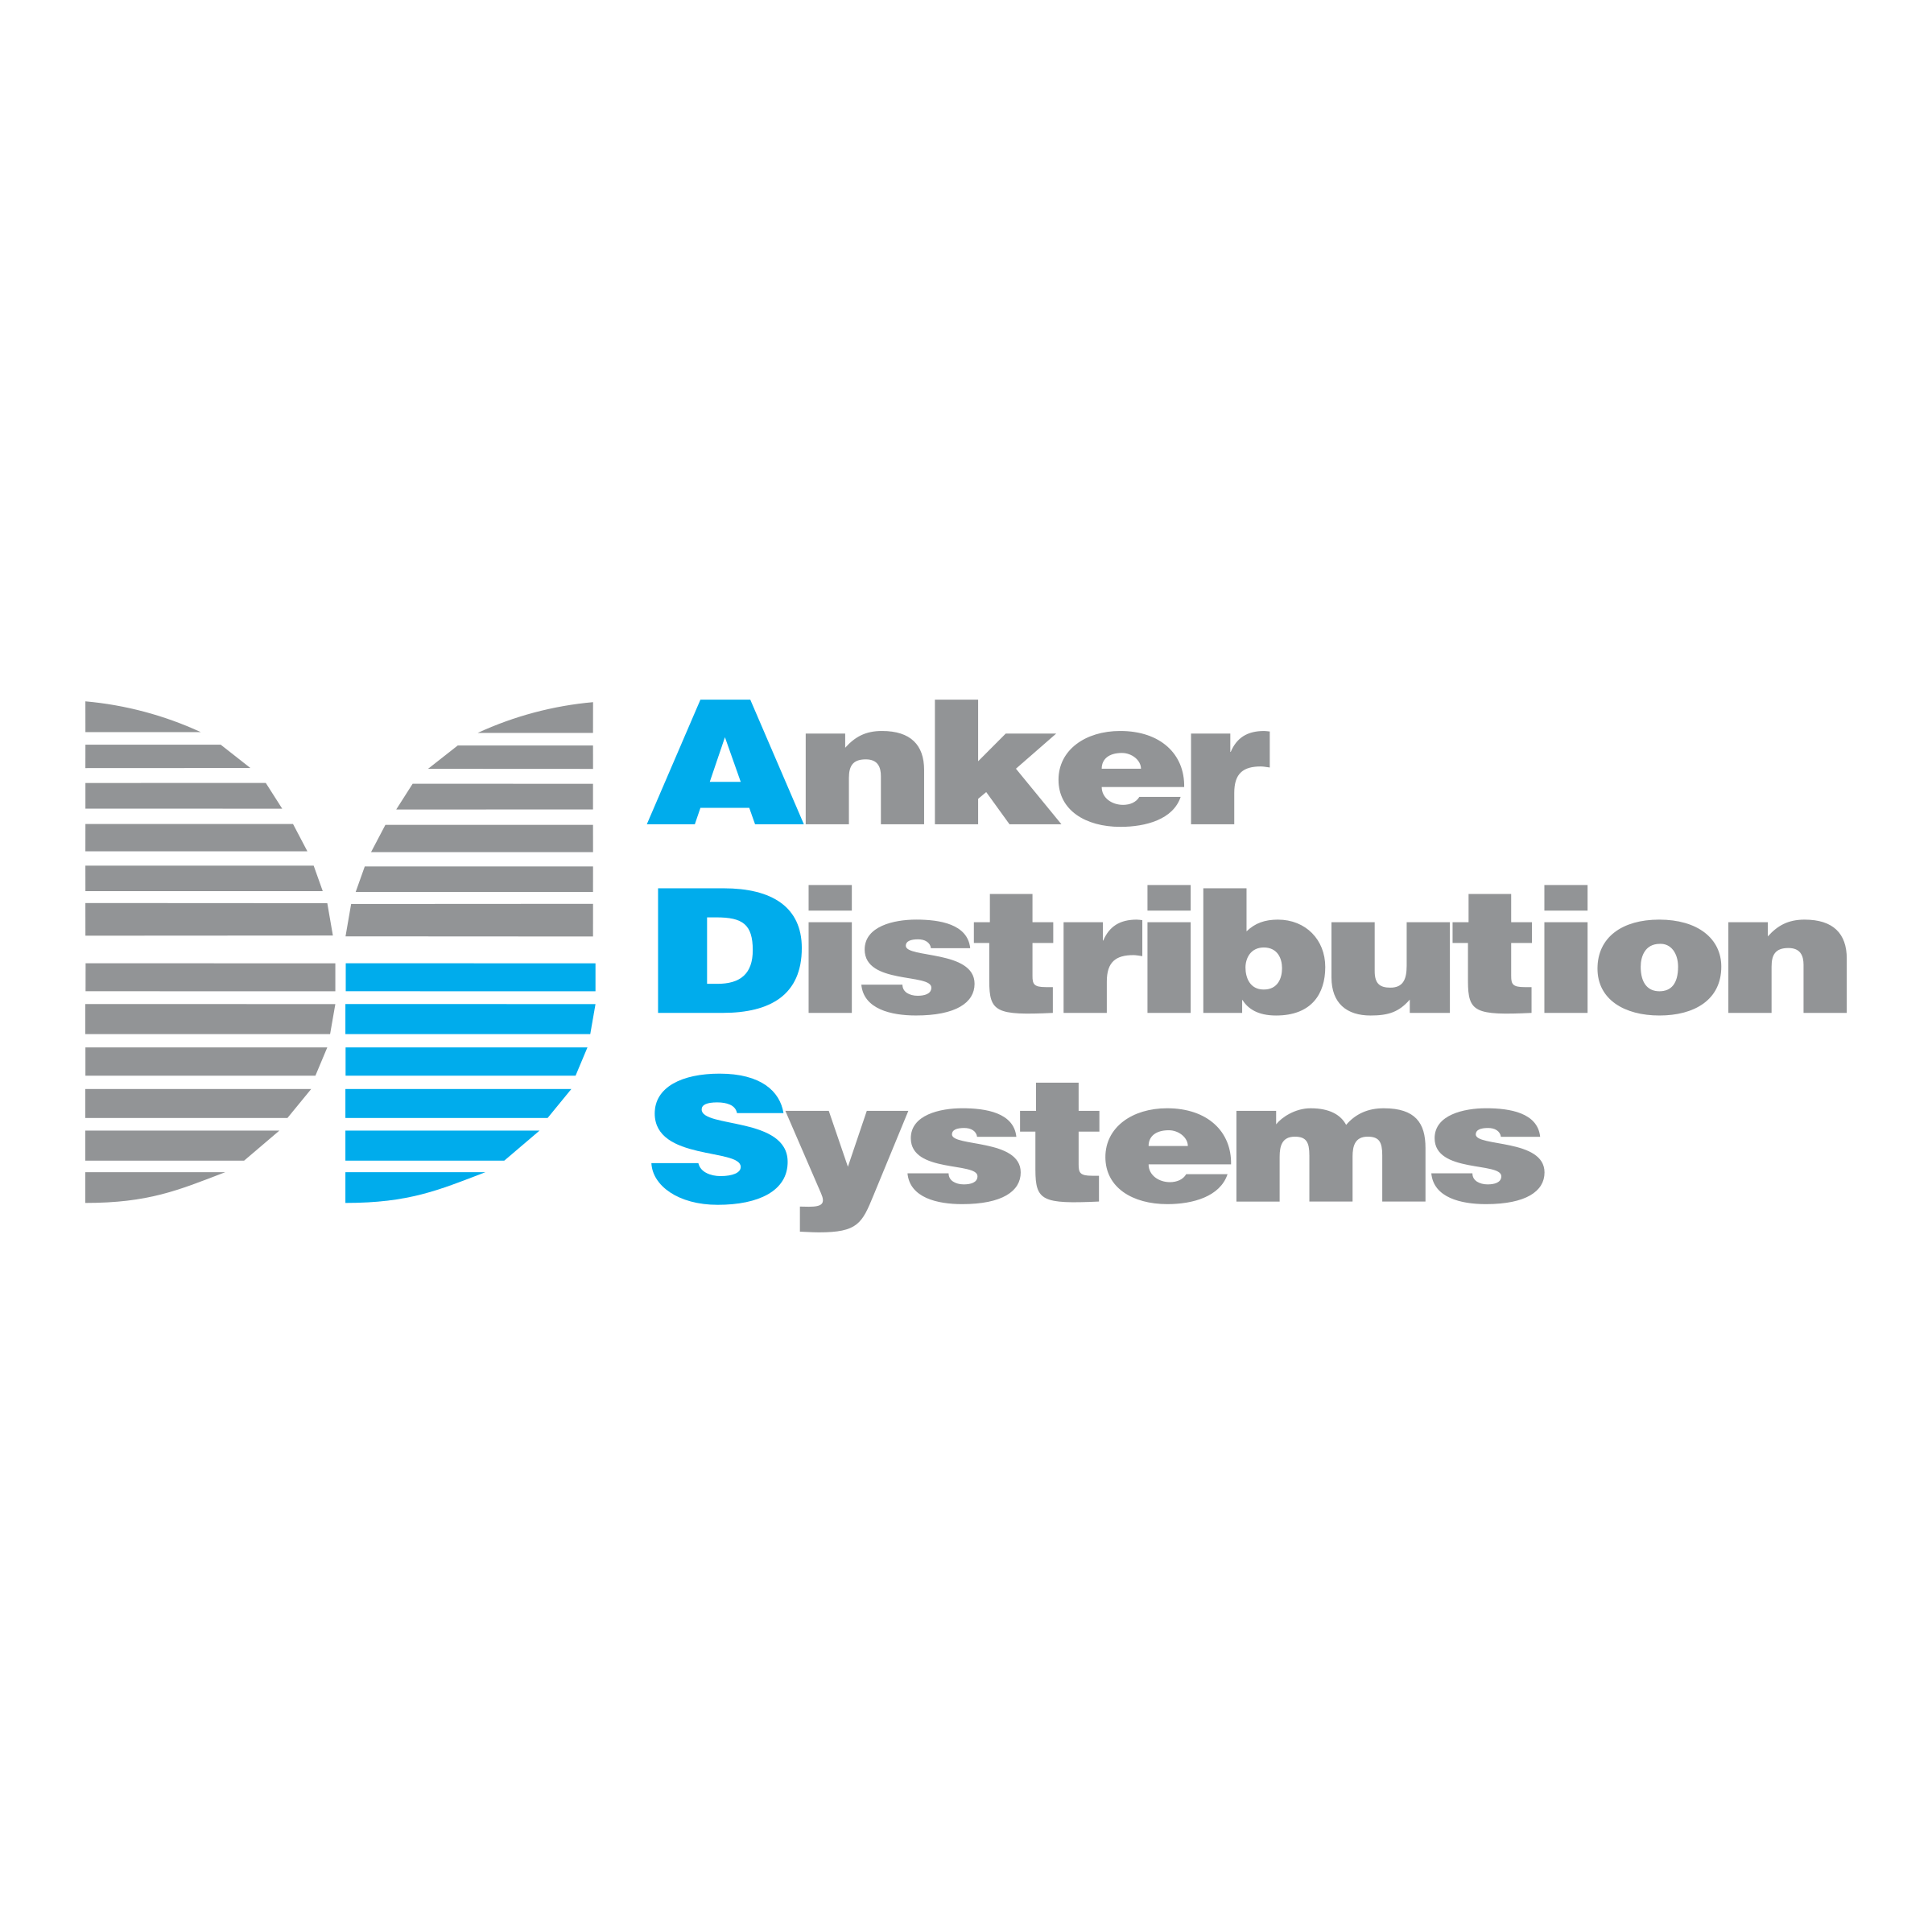 Anker Logo - Anker Distribution Systems Logo PNG Transparent & SVG Vector ...